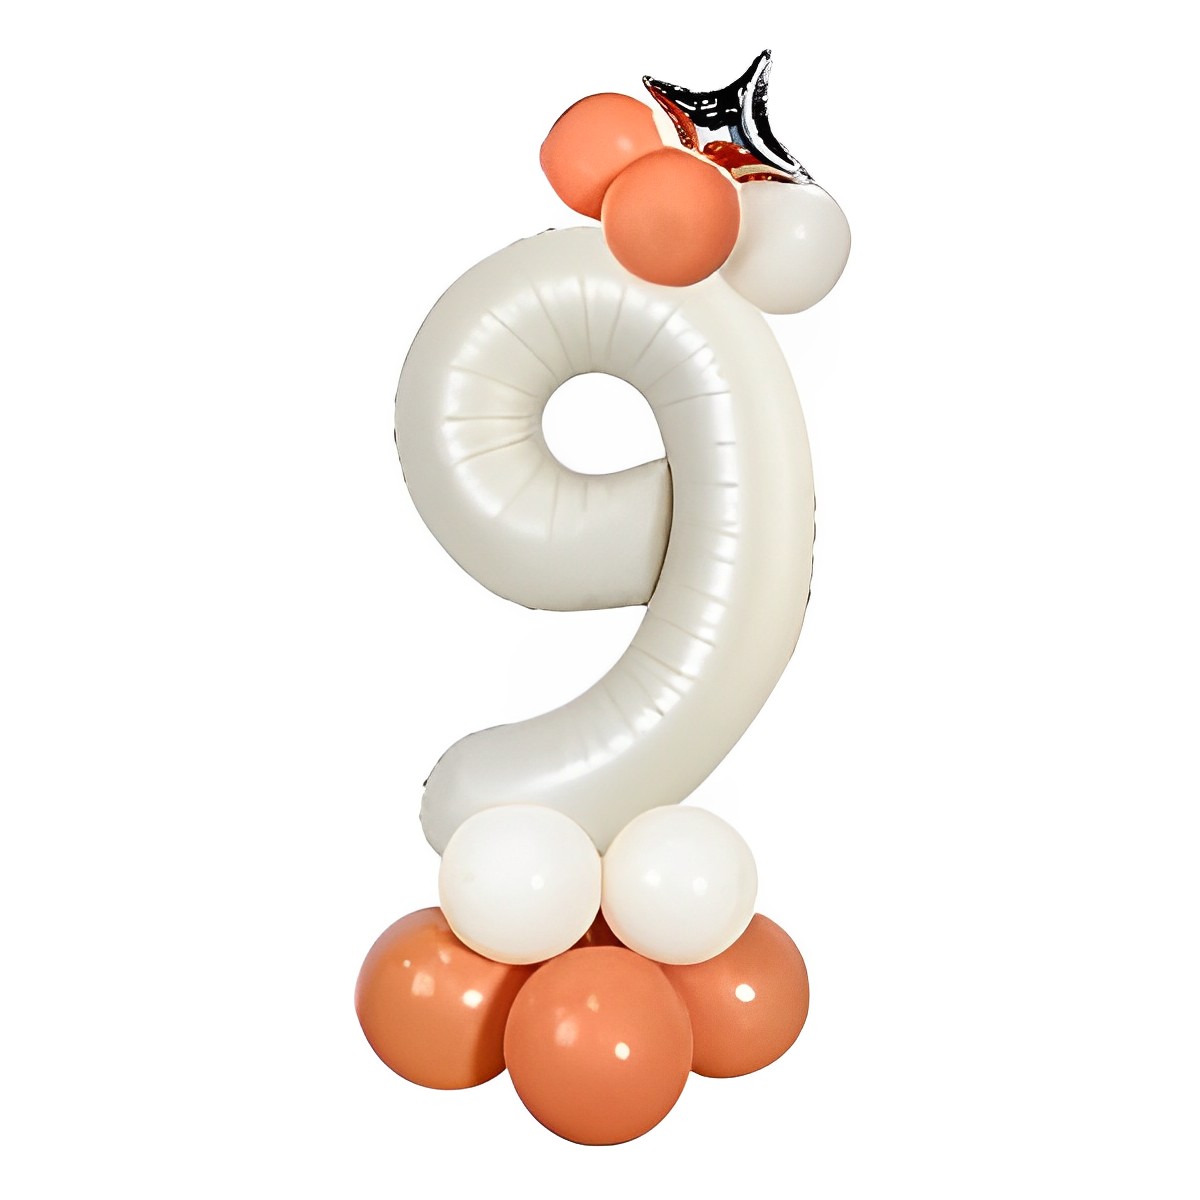 数字 バルーン ナンバーバルーン 誕生日 飾り付け セット L 大きい ナンバー バルーン 1 2 3 4 5 6 7 8 9 0 ホワイト くすみ  風船